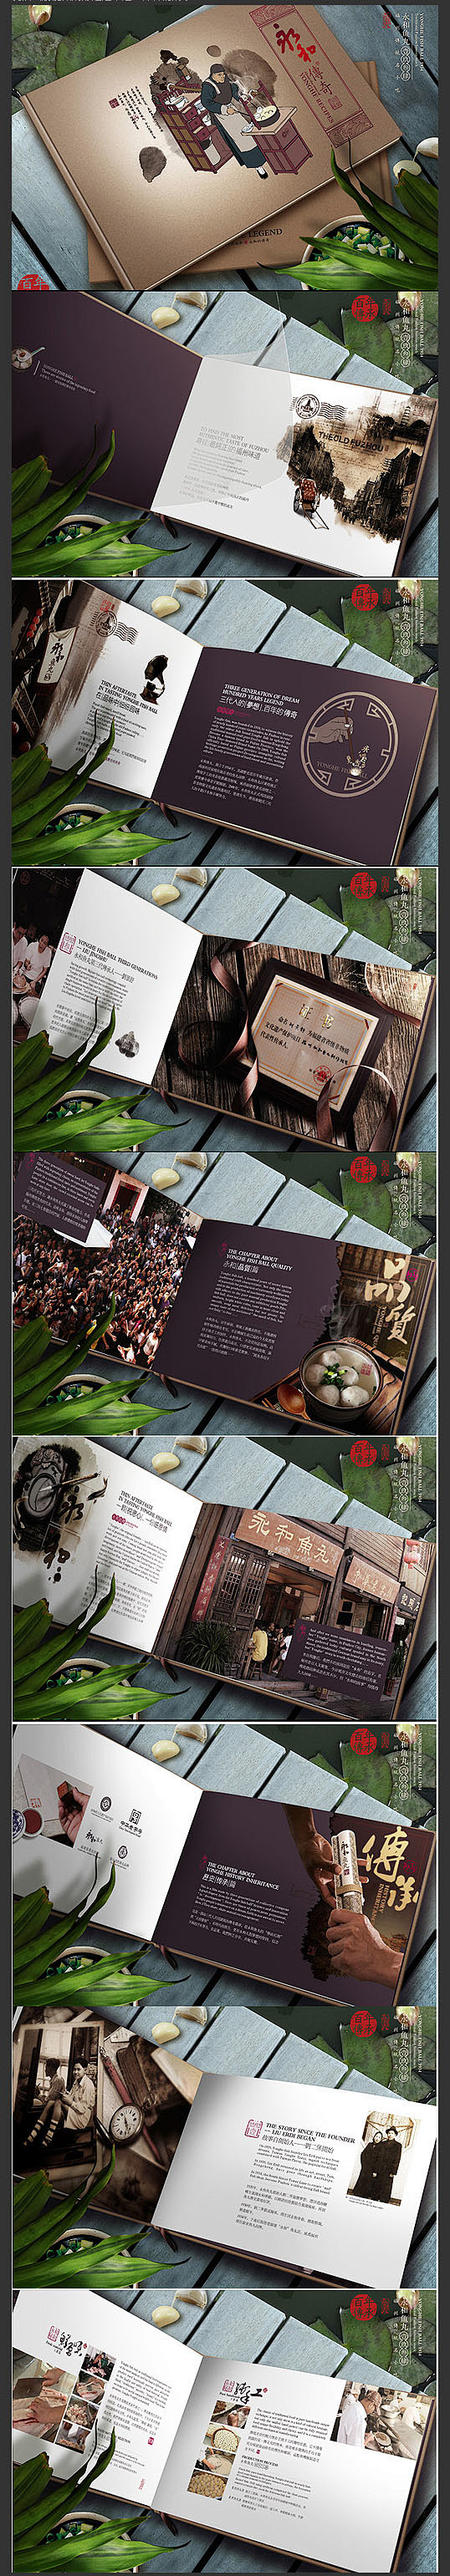 餐饮画册设计 中国风餐饮画册设计 豆浆画...